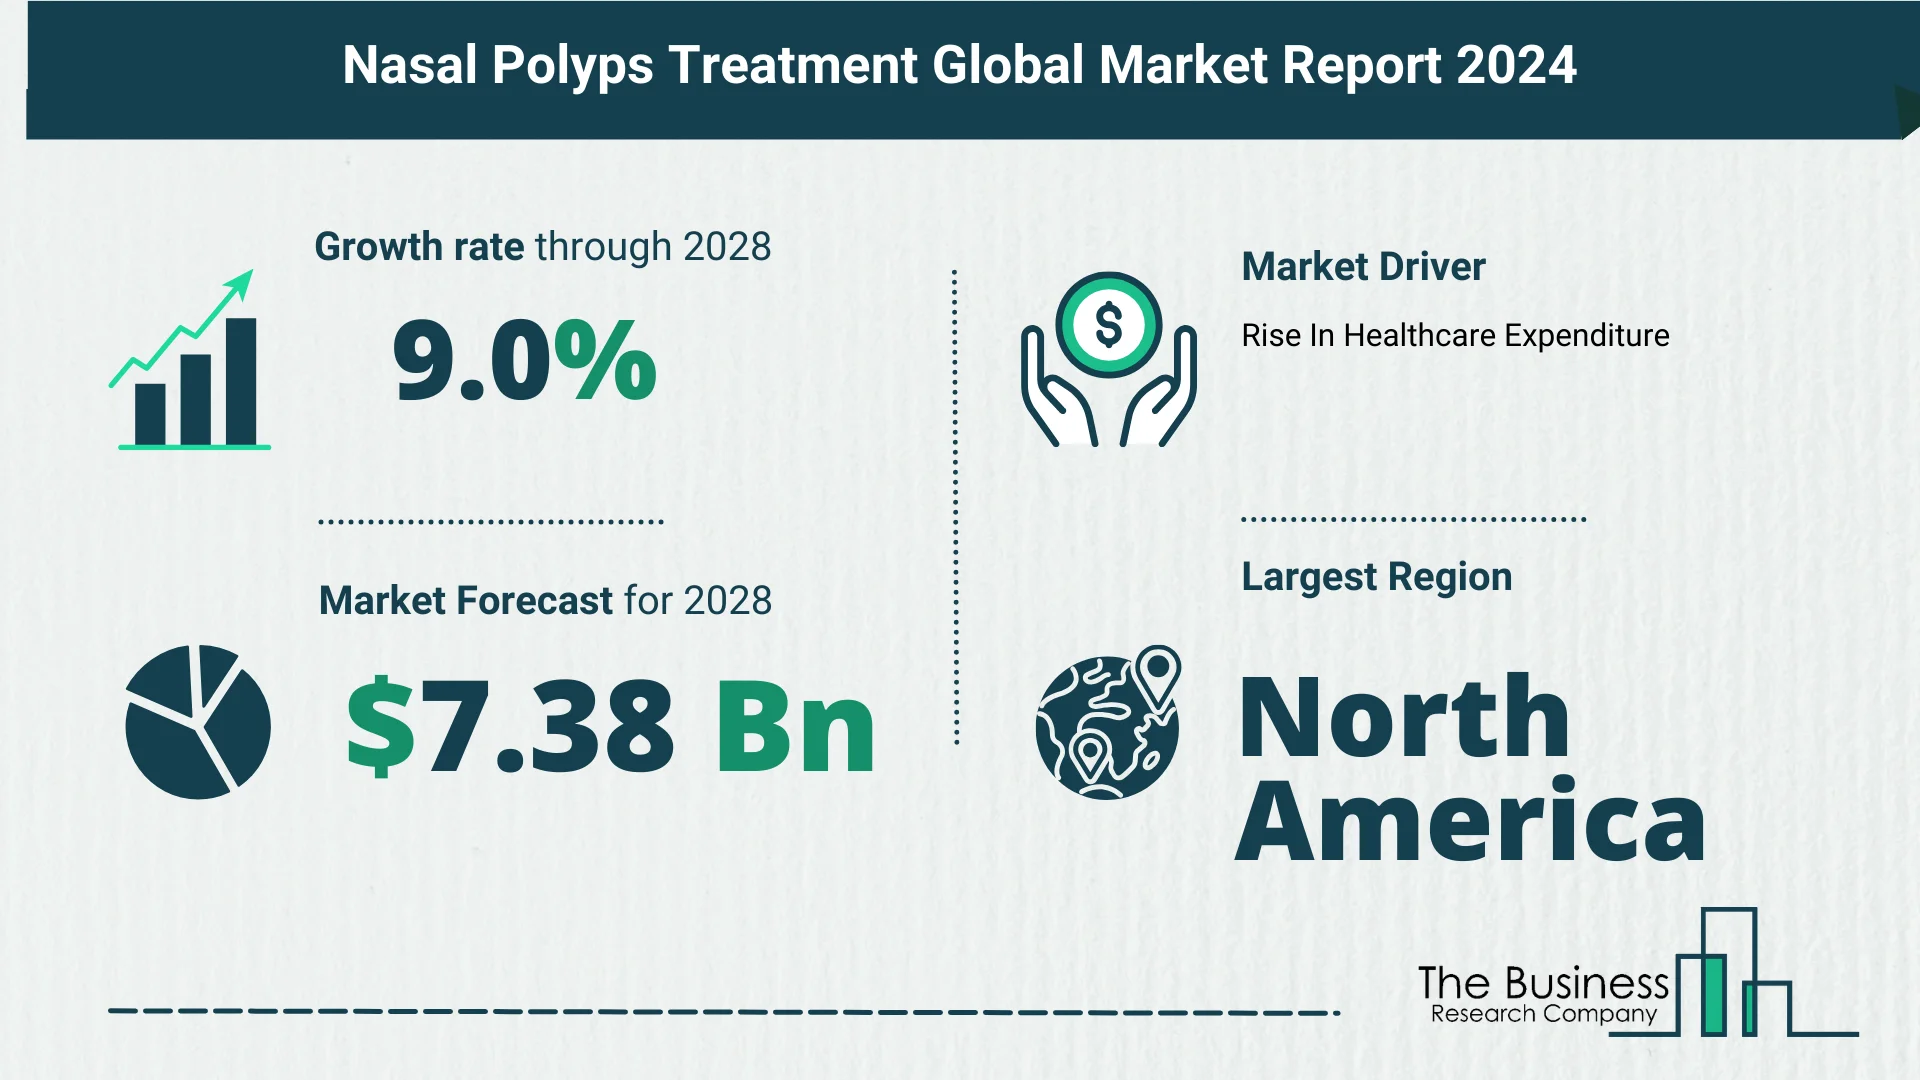 Global Nasal Polyps Treatment Market Size